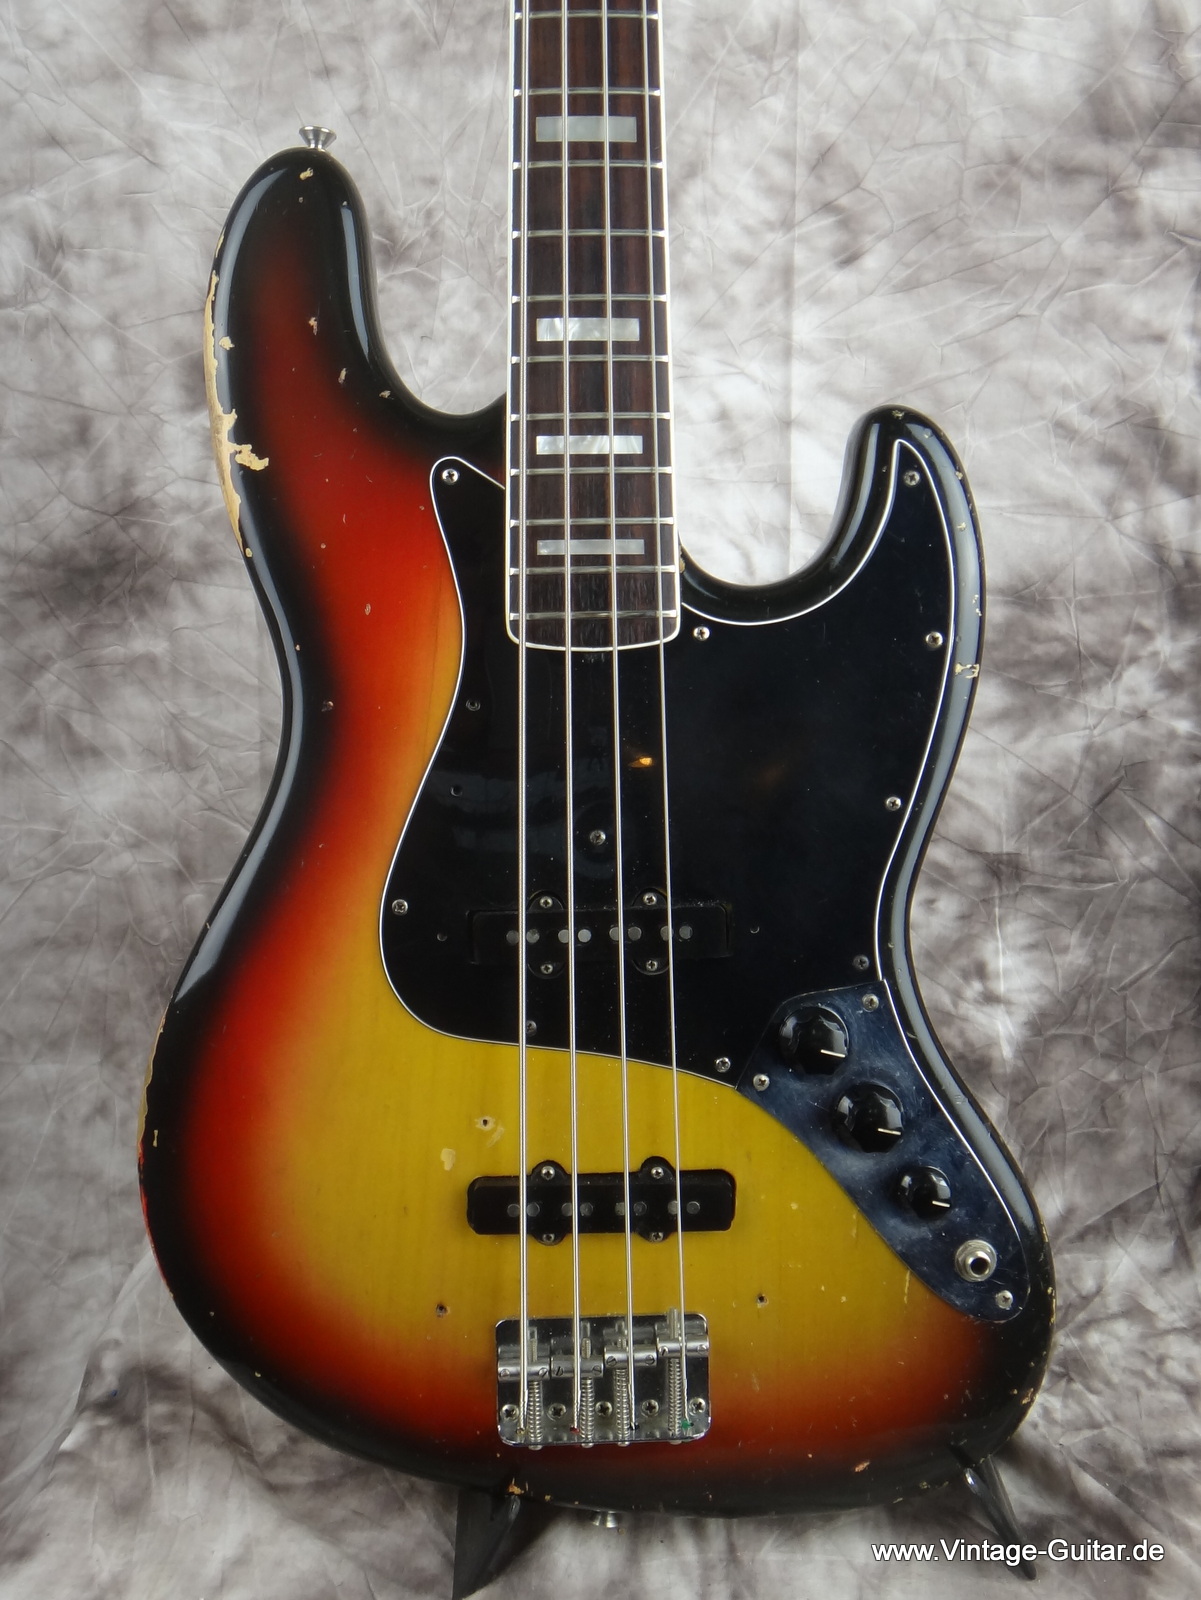 Fender_Jazz-Bass_1974_sunburst-alder-body-002.JPG